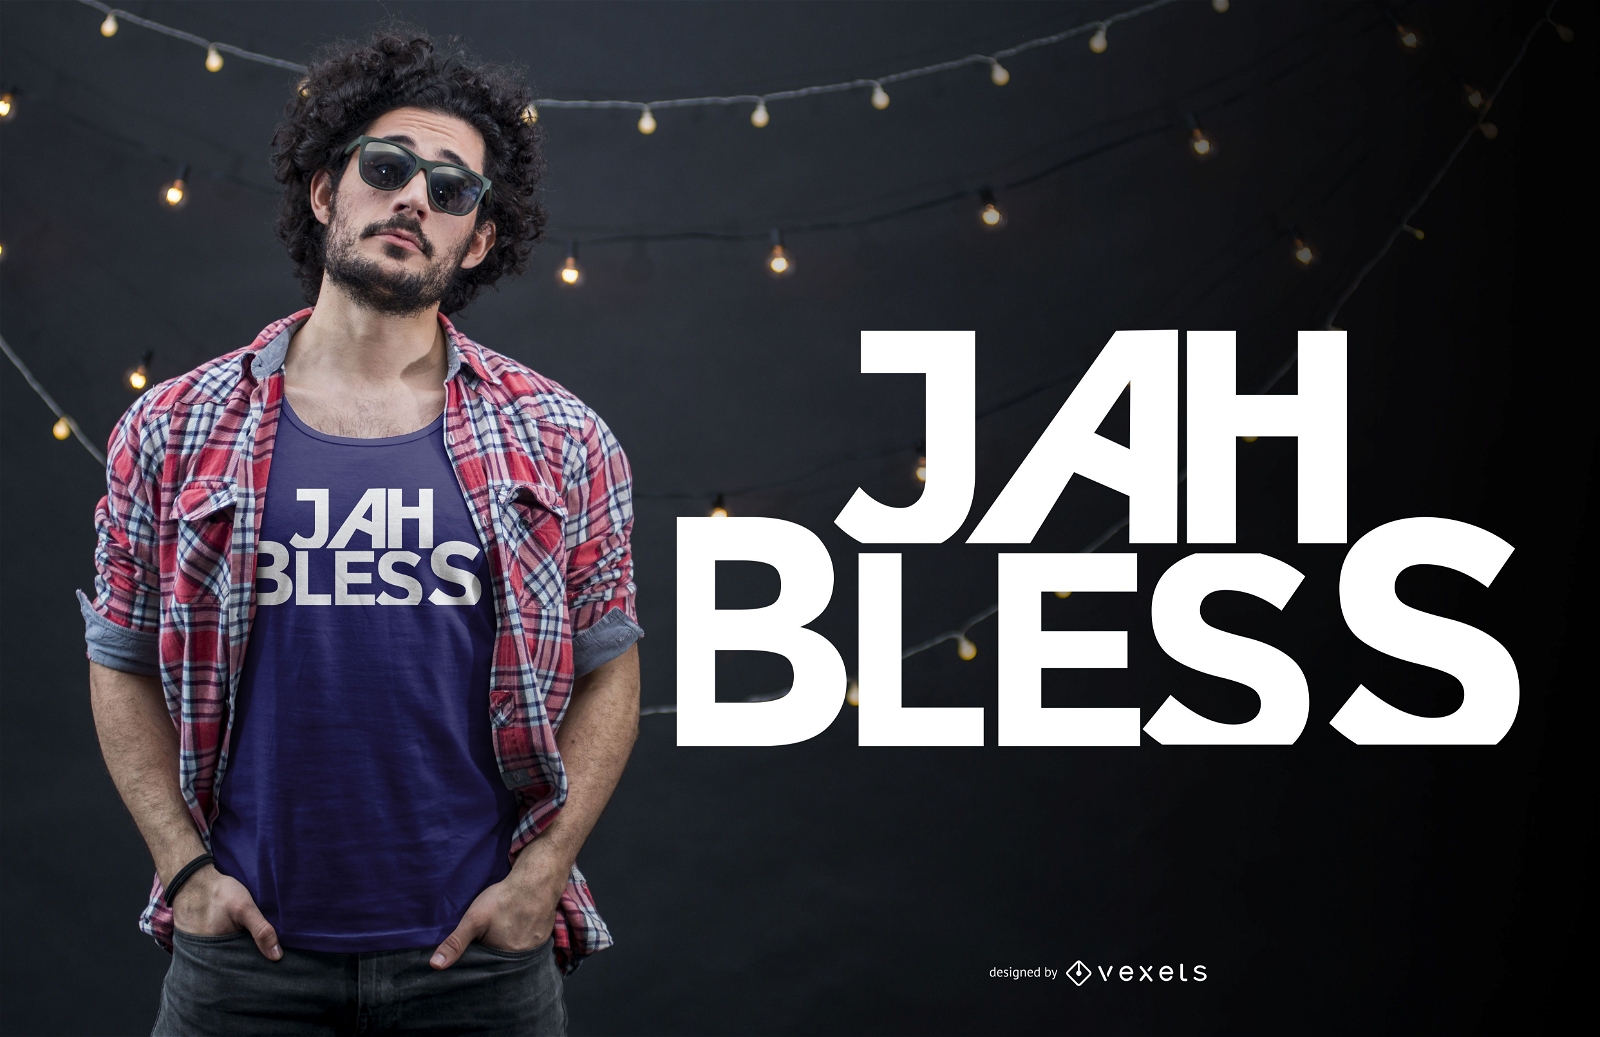 Jah bless t-shirt design